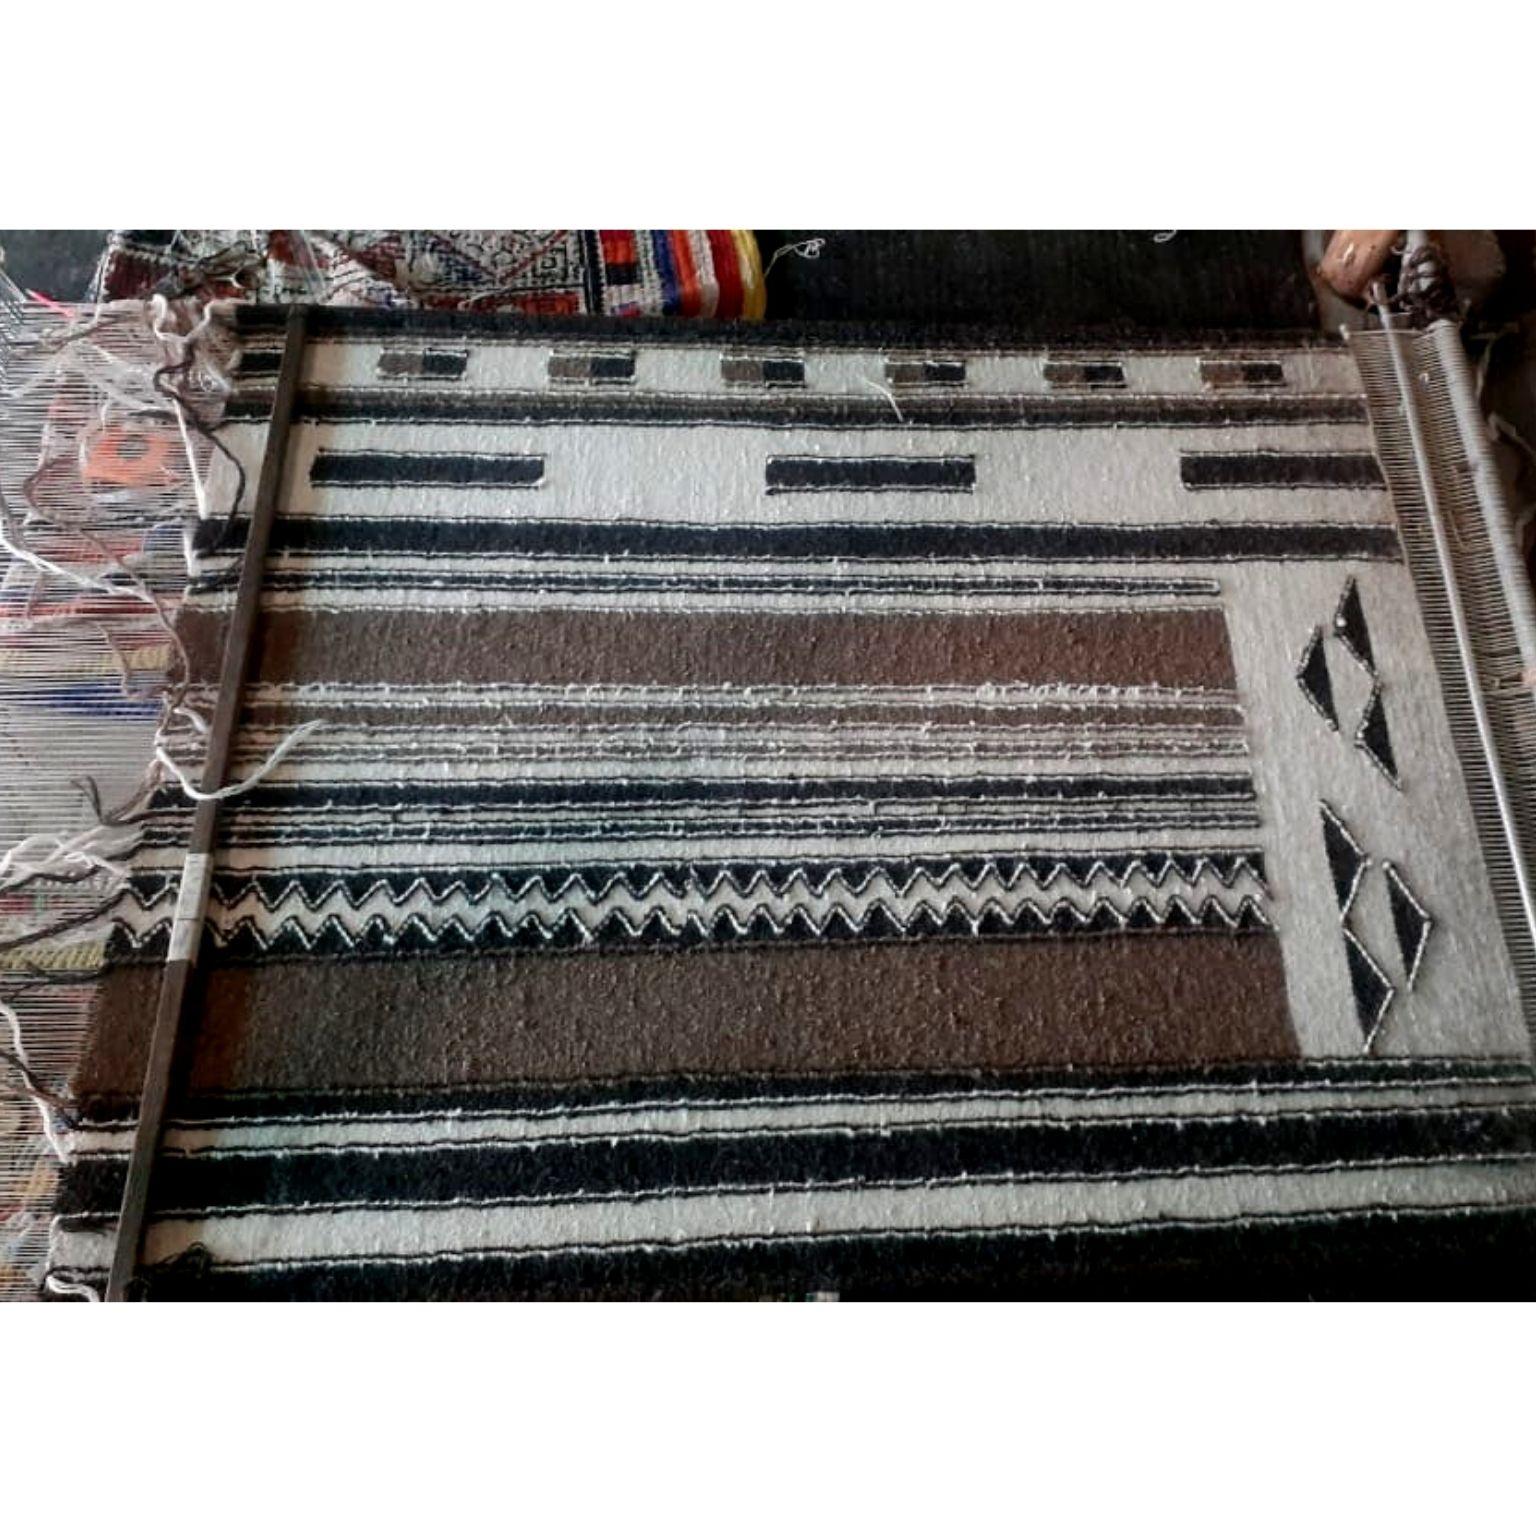 Geru Handloom Indian Wool Rug in Neutral Tones Geometric Patterns For Sale 4